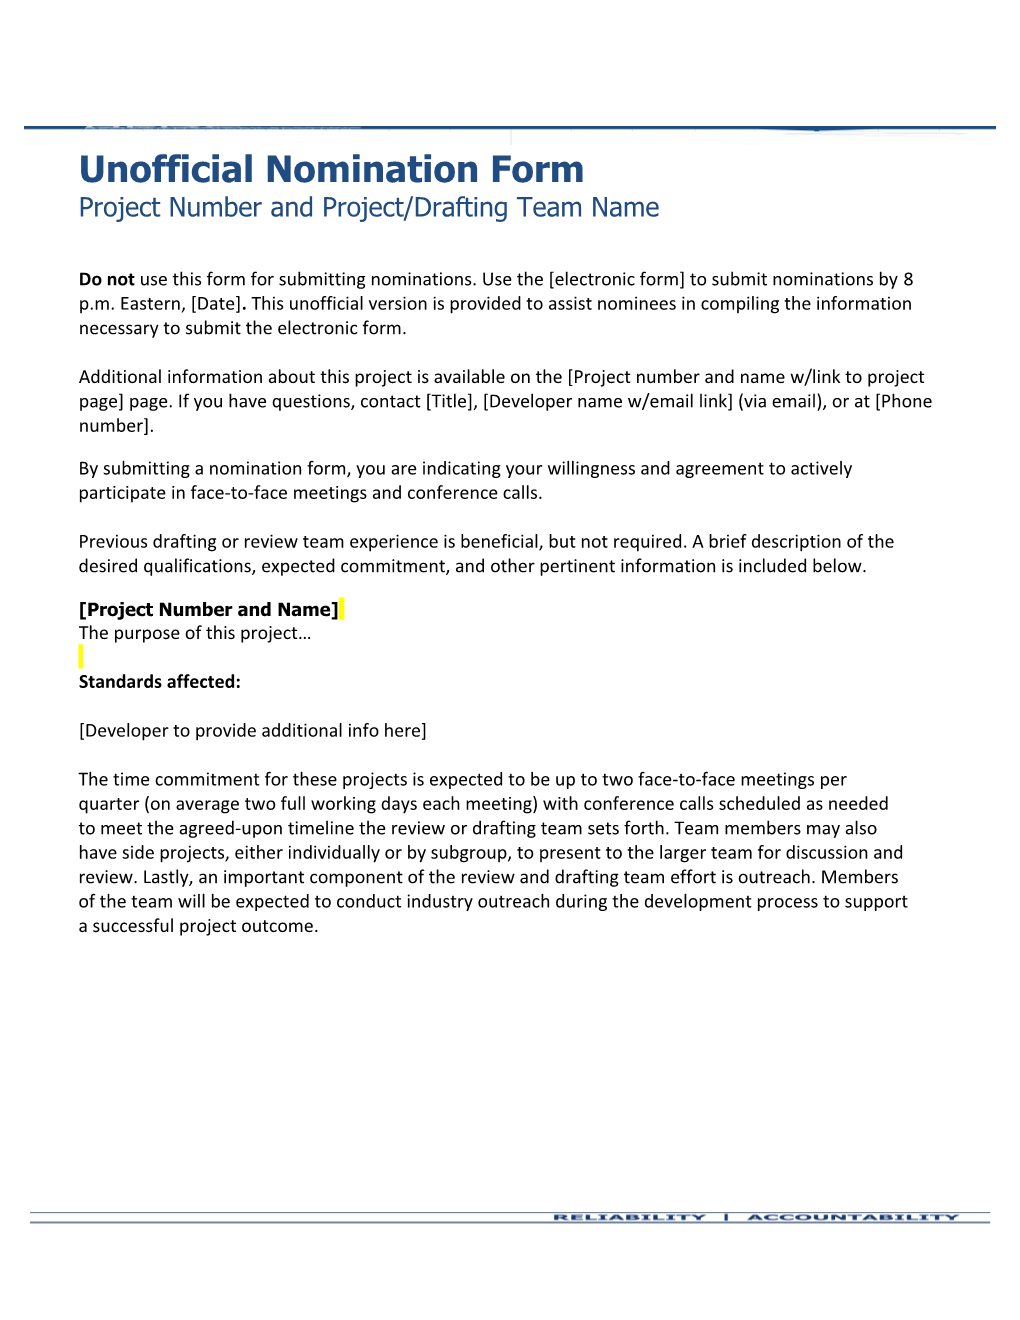 Drafting Team Nomination Form